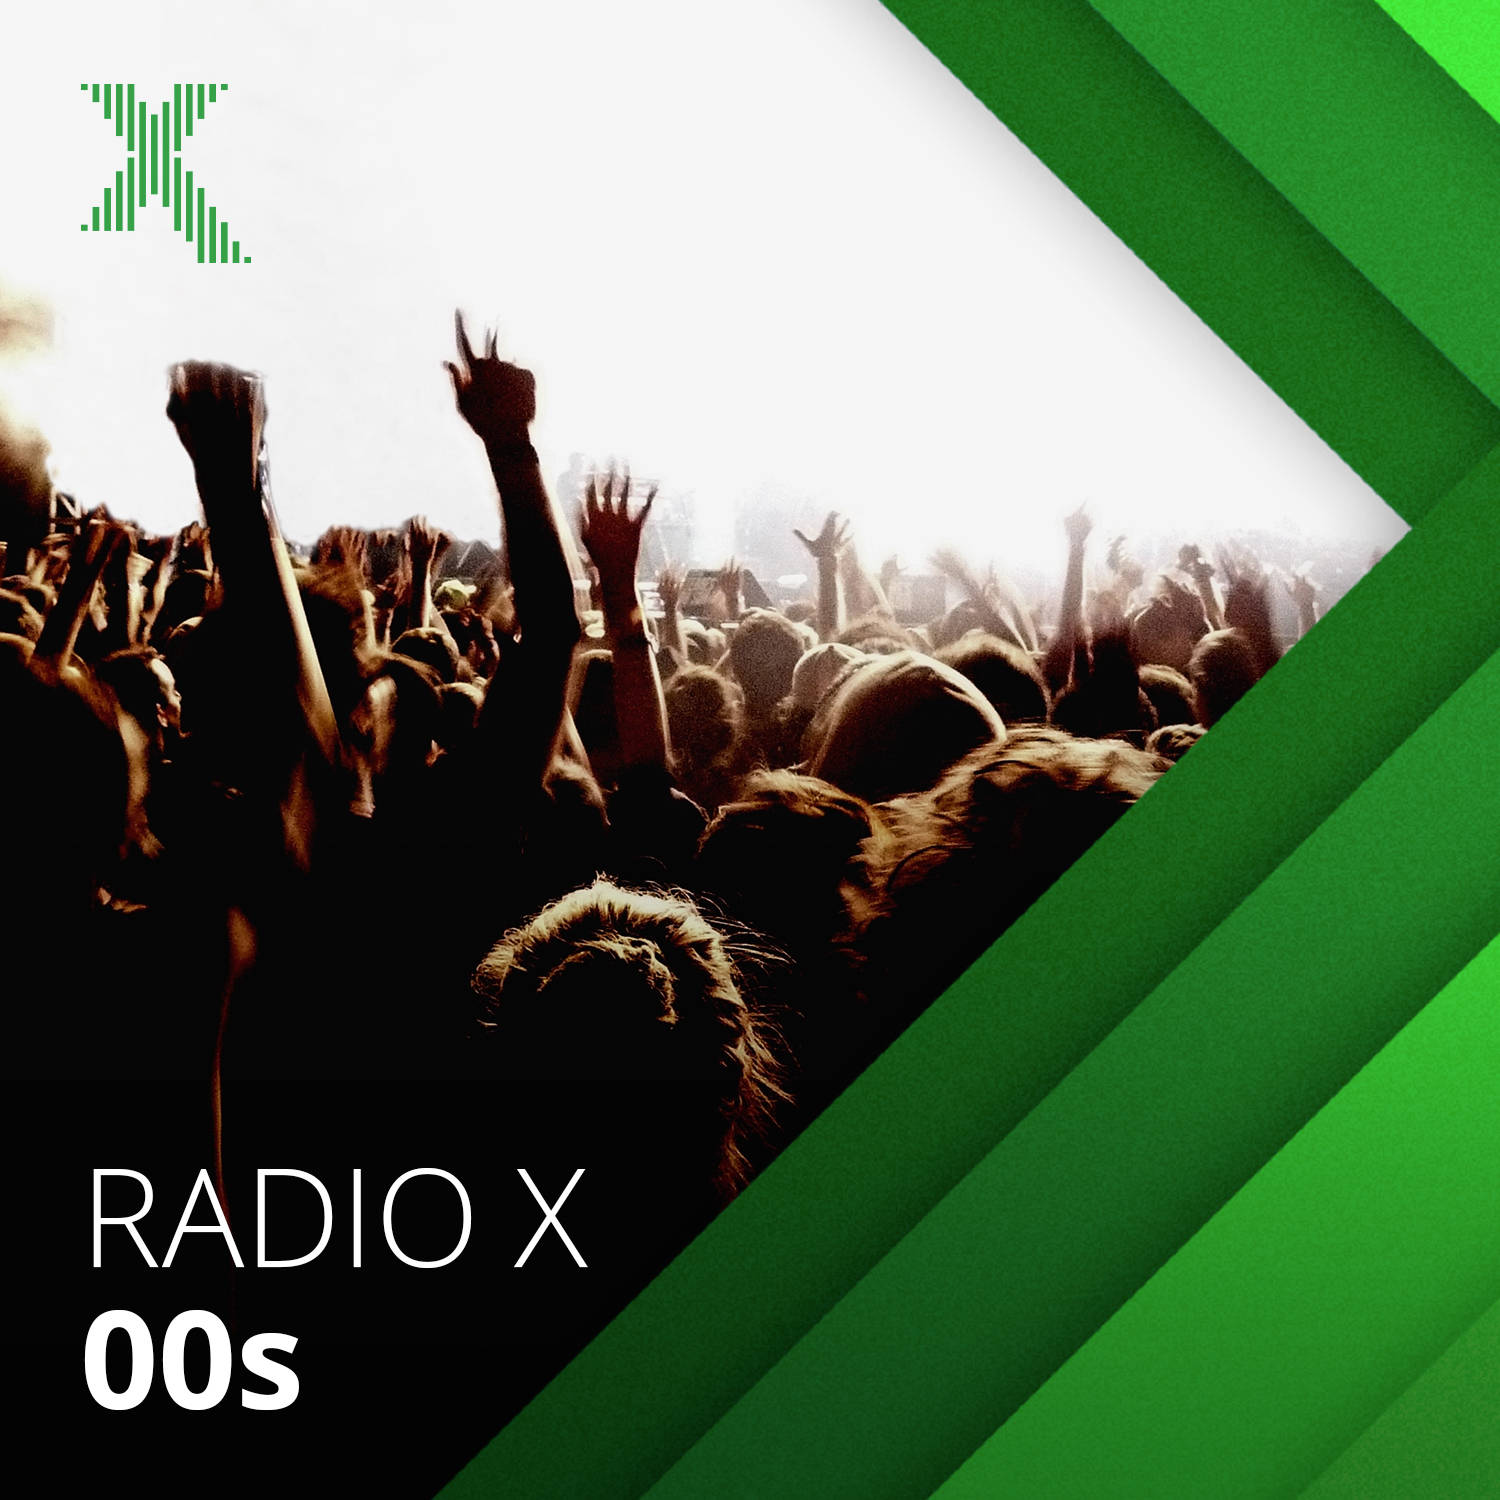 Radio X 00s image